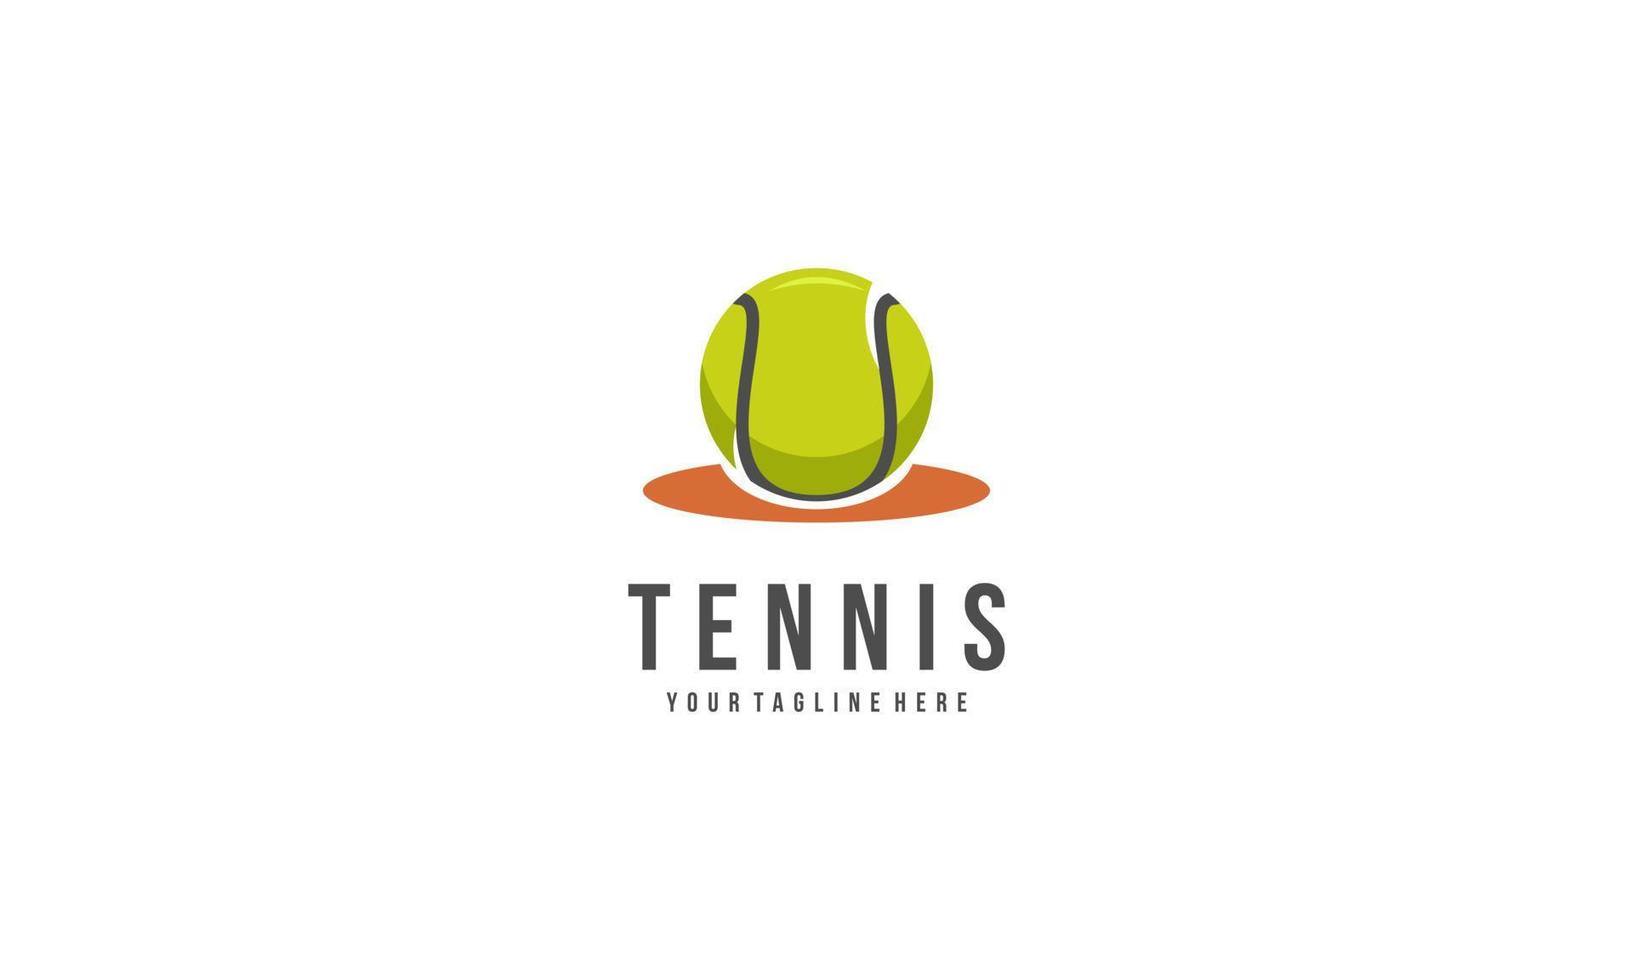 tennis raquette et Balle logo conception vecteur